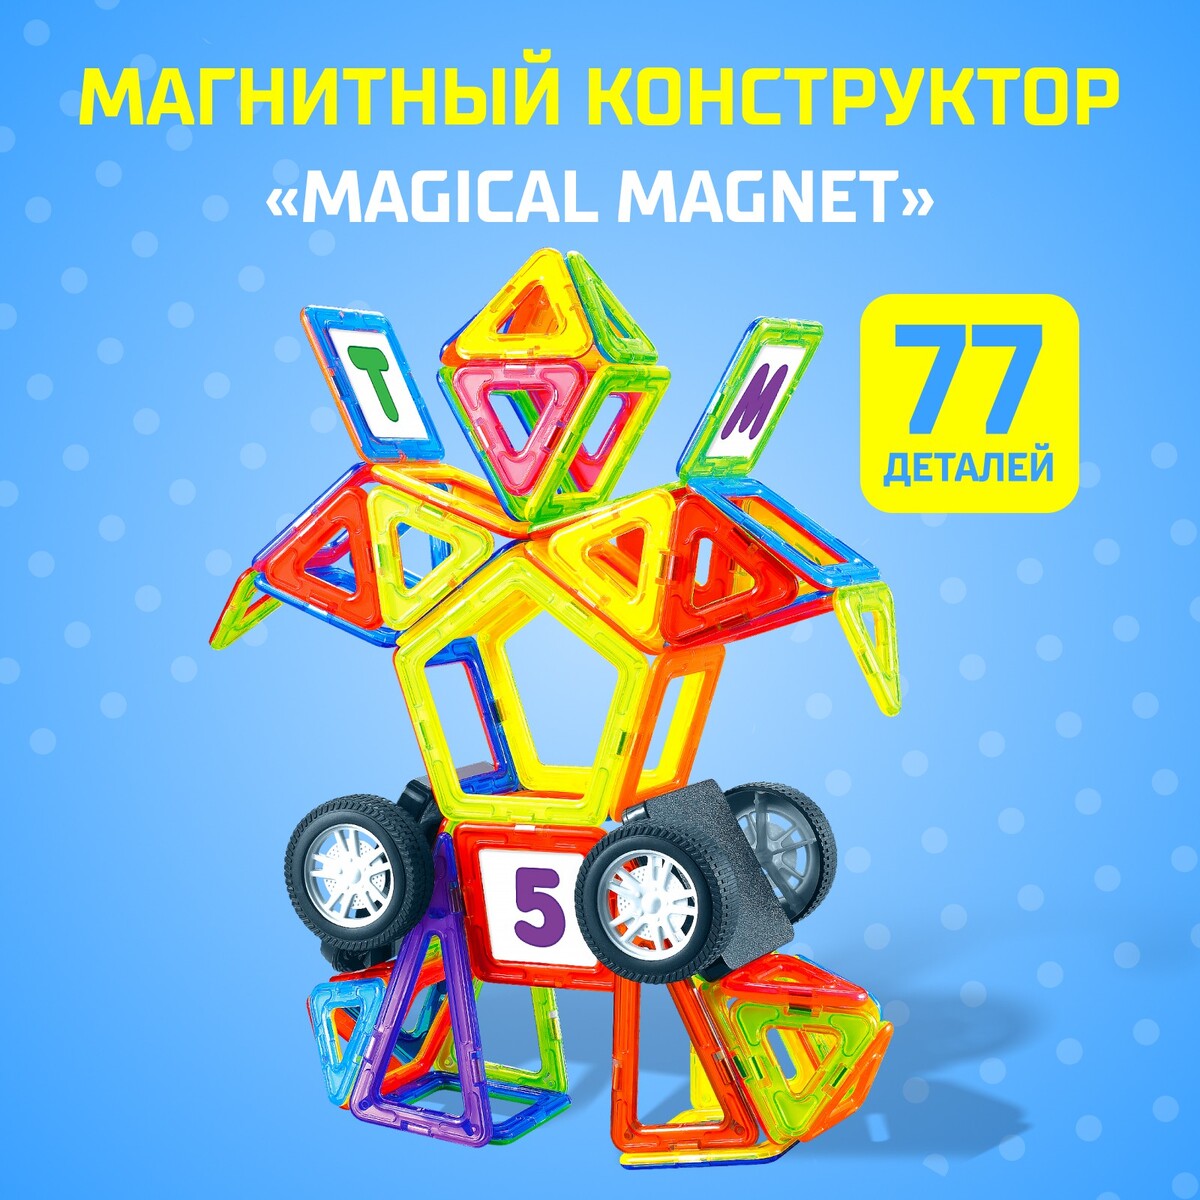 Магнитный конструктор magical magnet, 77 деталей, детали матовые конструктор магнитный 62 детали